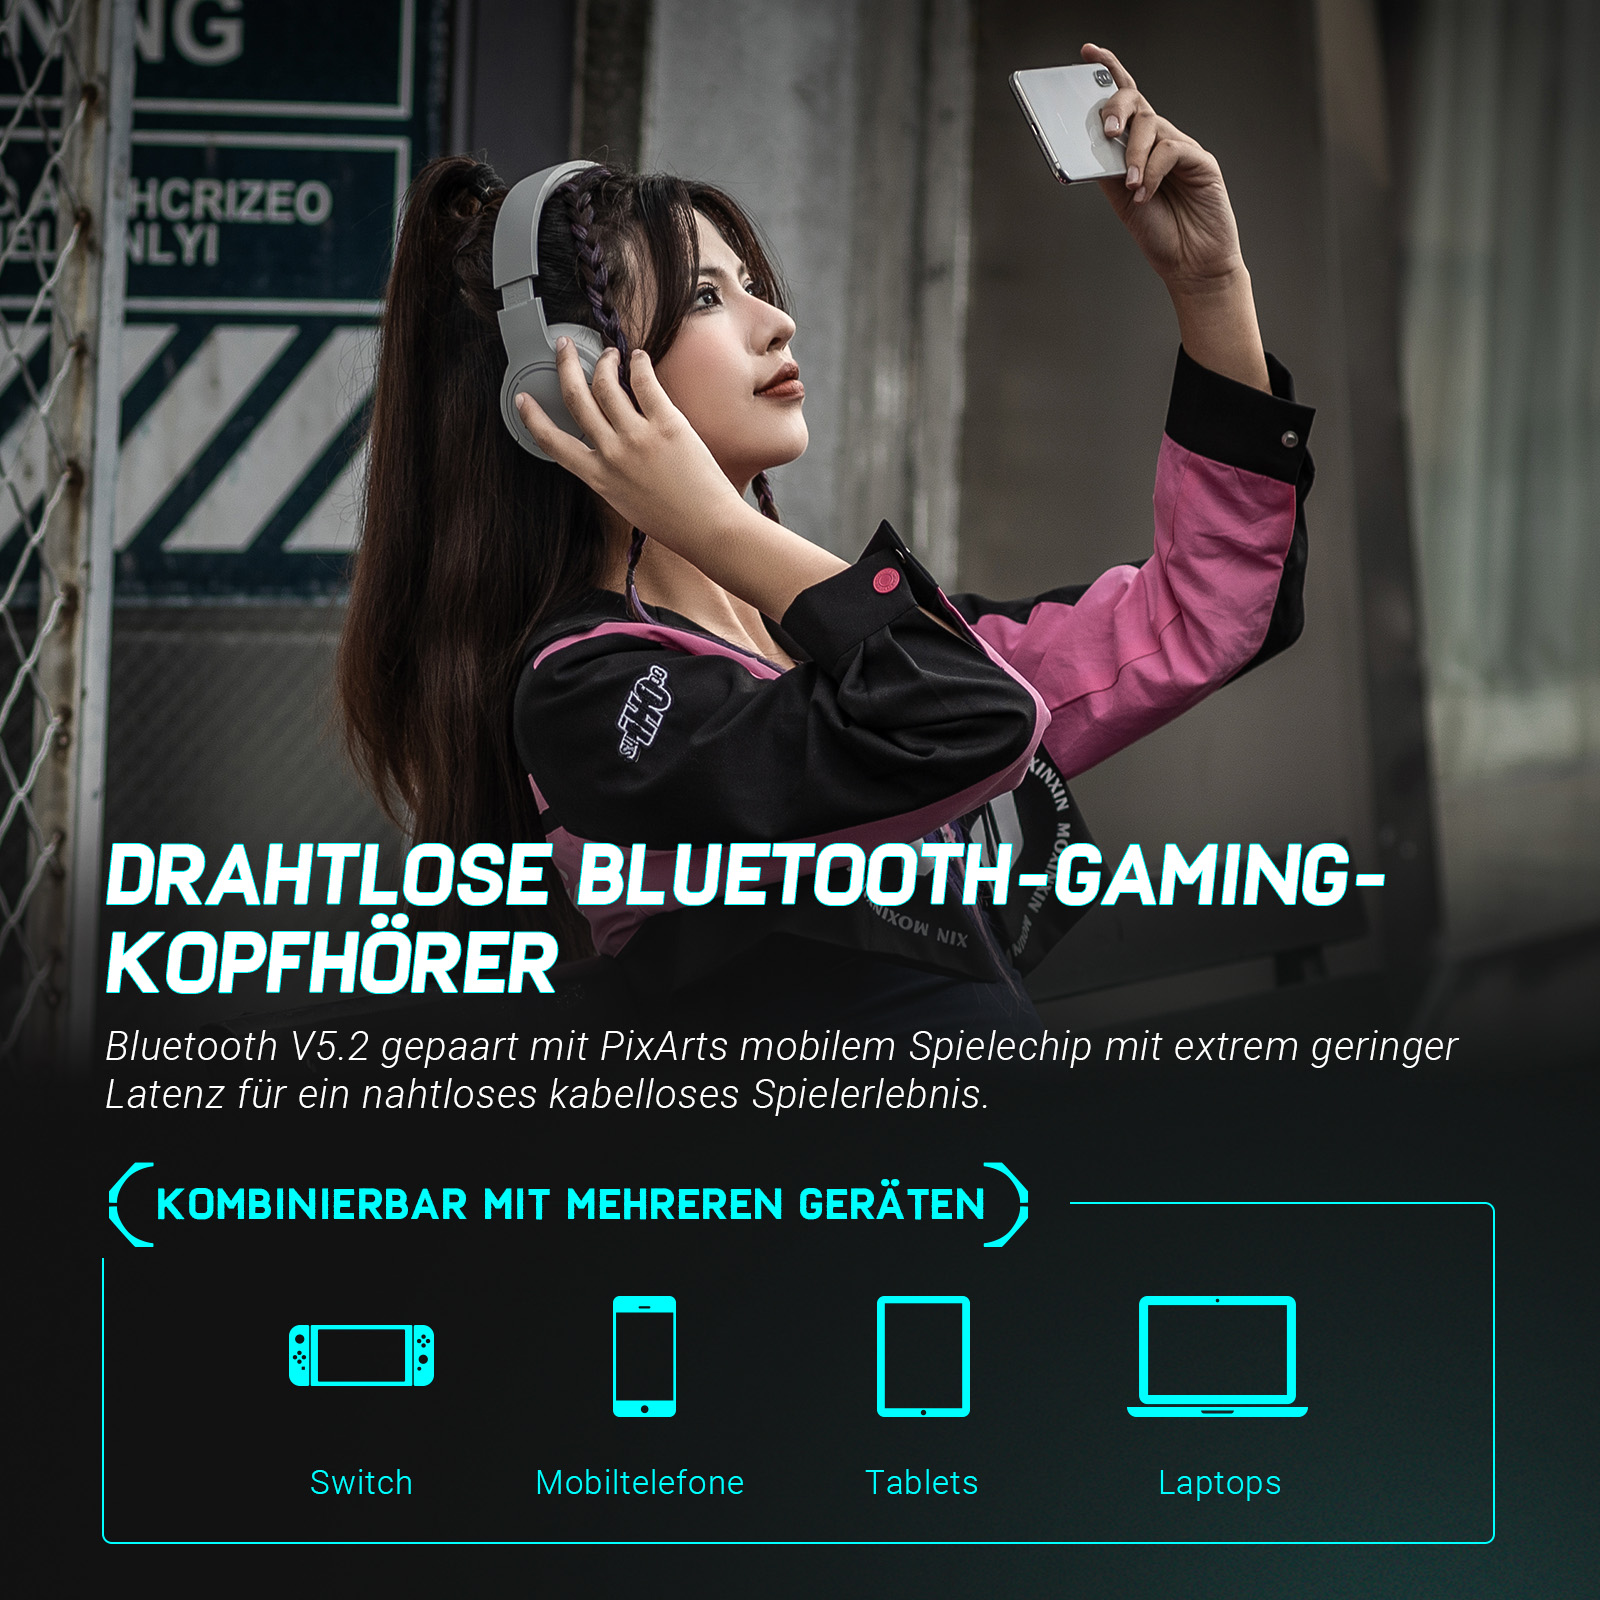 Grau EDIFIER Bluetooth-Kopfhörer G2BT, Over-ear Bluetooth